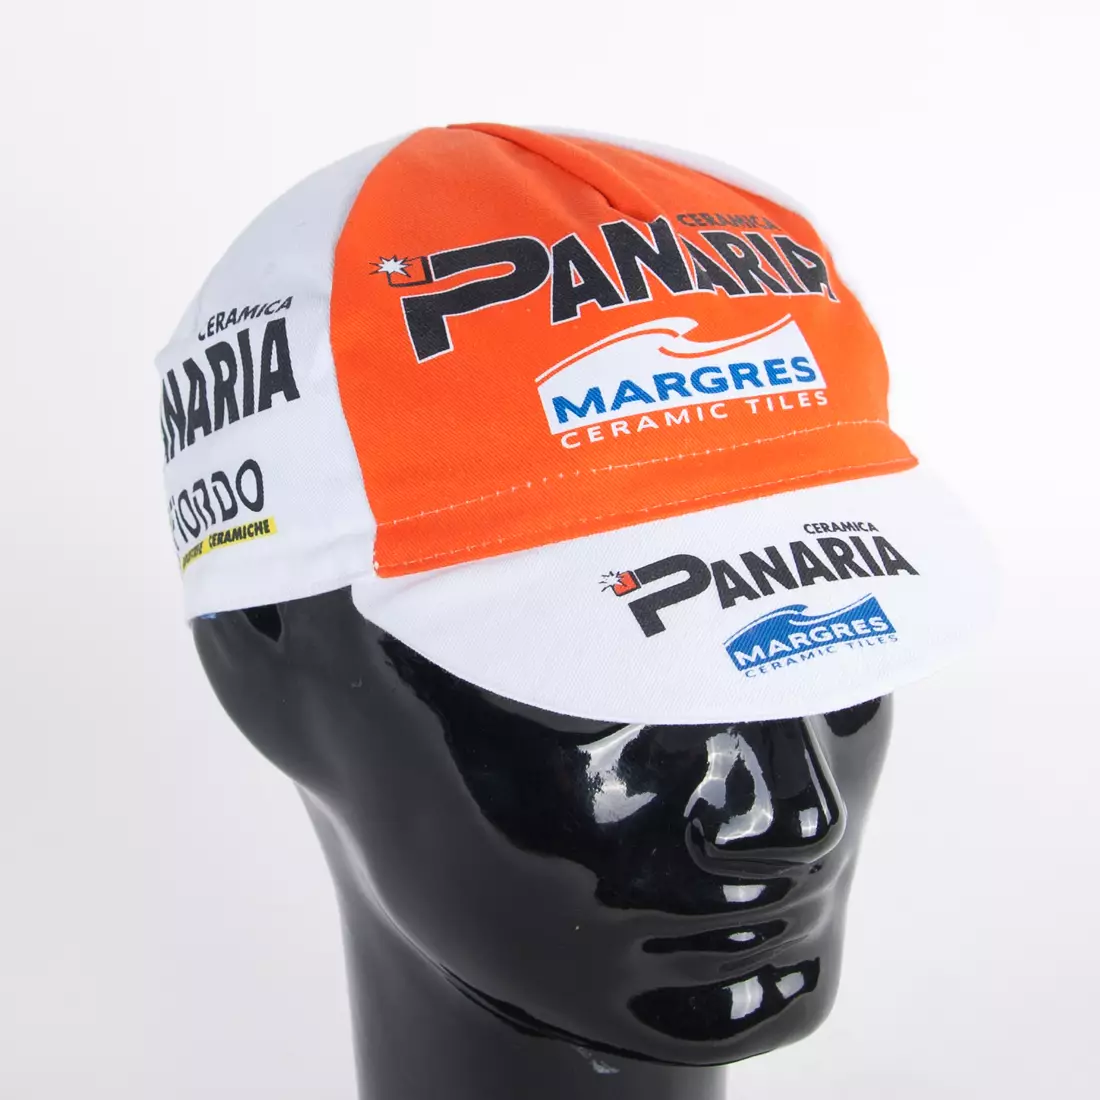 Apis Profi cyklistická čepice Ceramica Panaria Fiordo oranžová bílá